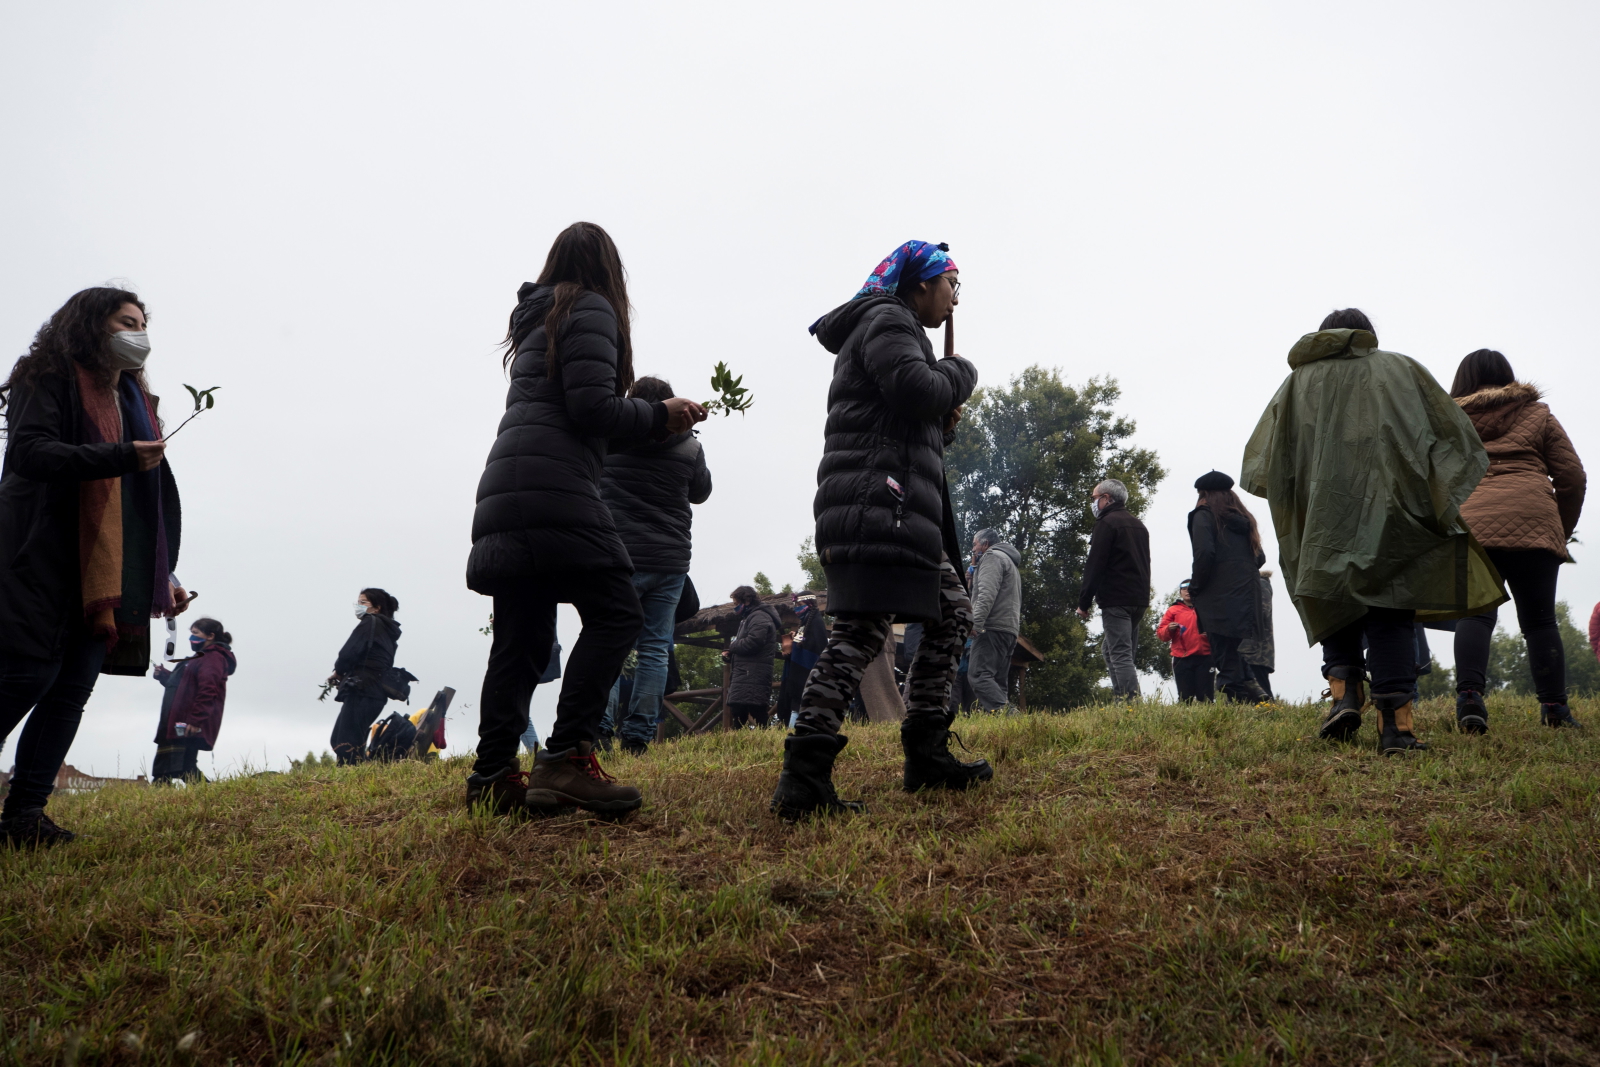  Członkowie społeczności Mateo Nahuelpan, należący do rdzennych mieszkańców Mapuche, wykonują rytuał przodków zwany „rogativa” przed całkowitym zaćmieniem słońca w Monkul, region La Araucania, Chile. Fot. EPA / Alberto Valdes